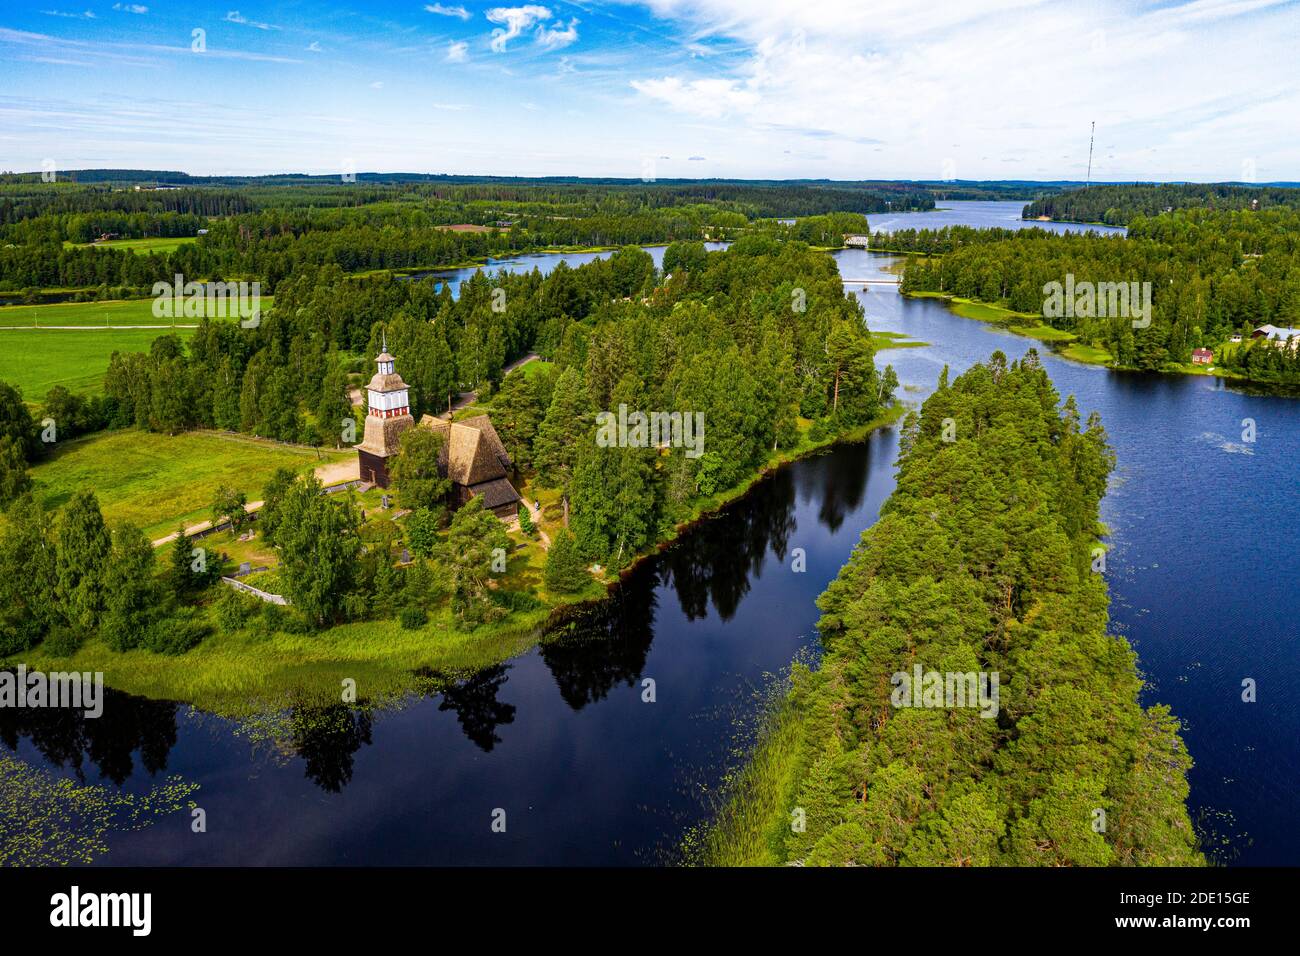 Vue aérienne de Petaejeveden (Petajavesi) incluant la vieille église, site du patrimoine mondial de l'UNESCO, Finlande, Europe Banque D'Images